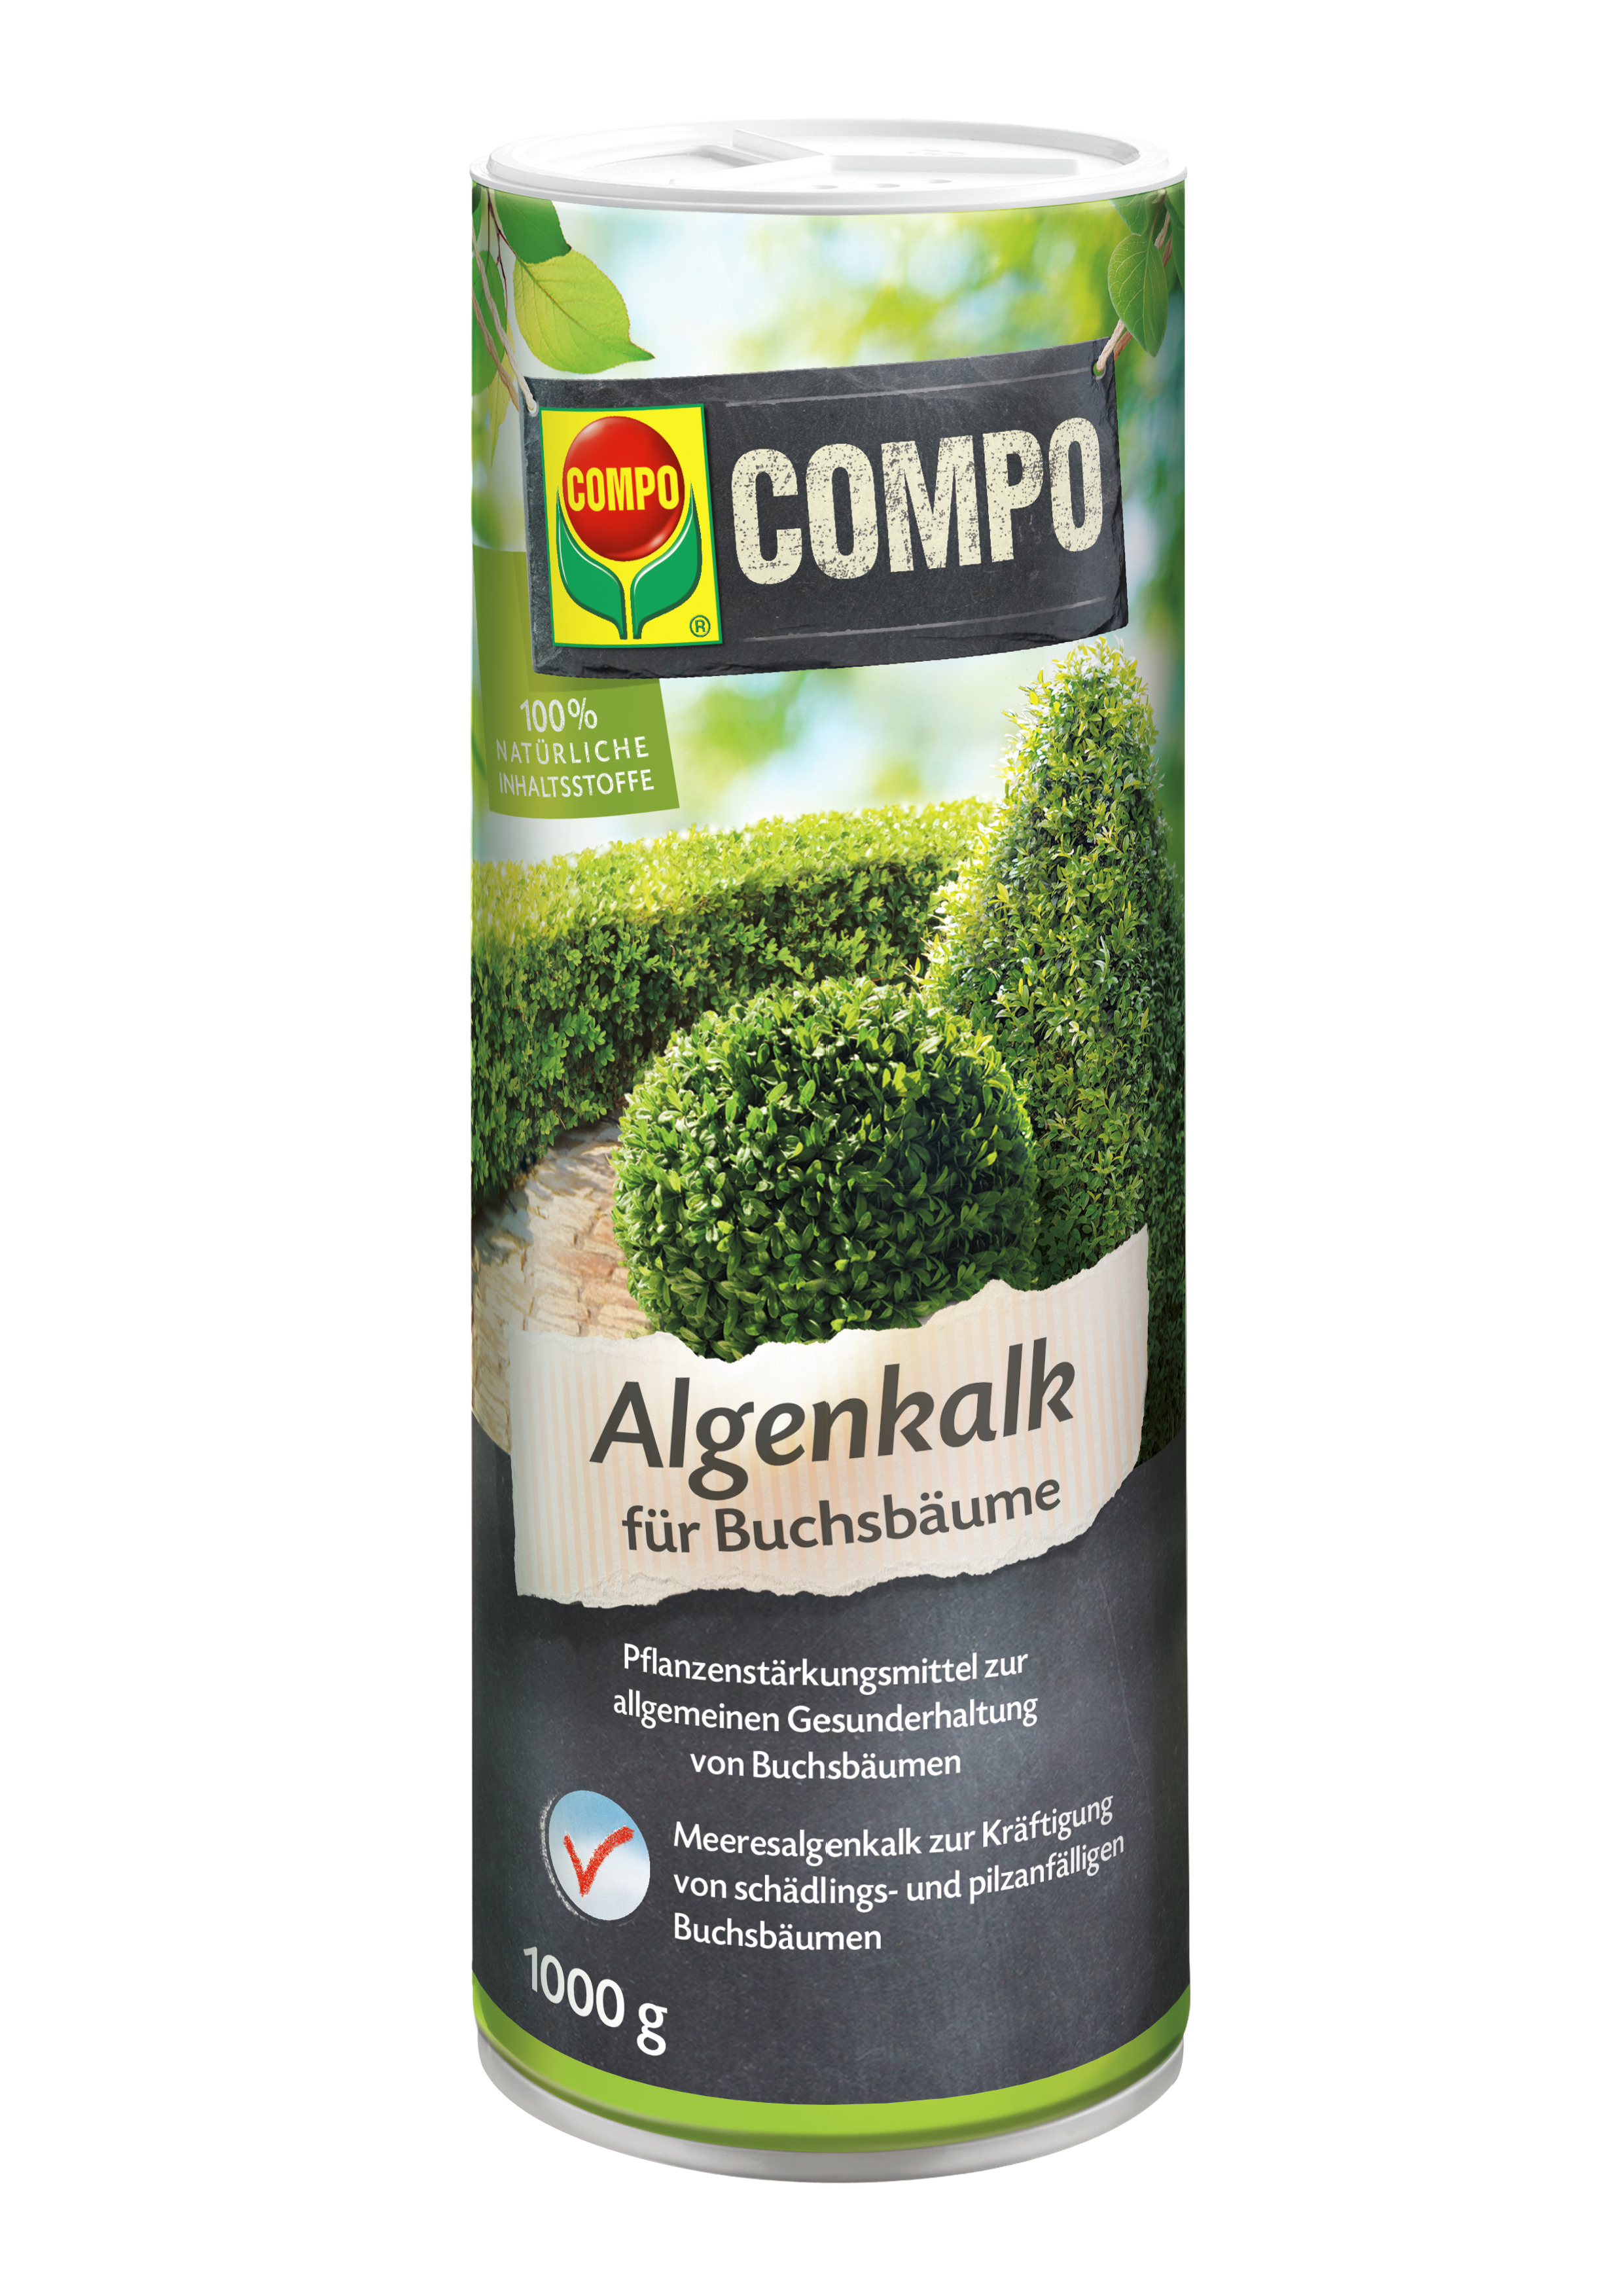 COMPO COMPO Algenkalk für Buchsbäume 1kg Compo EREG